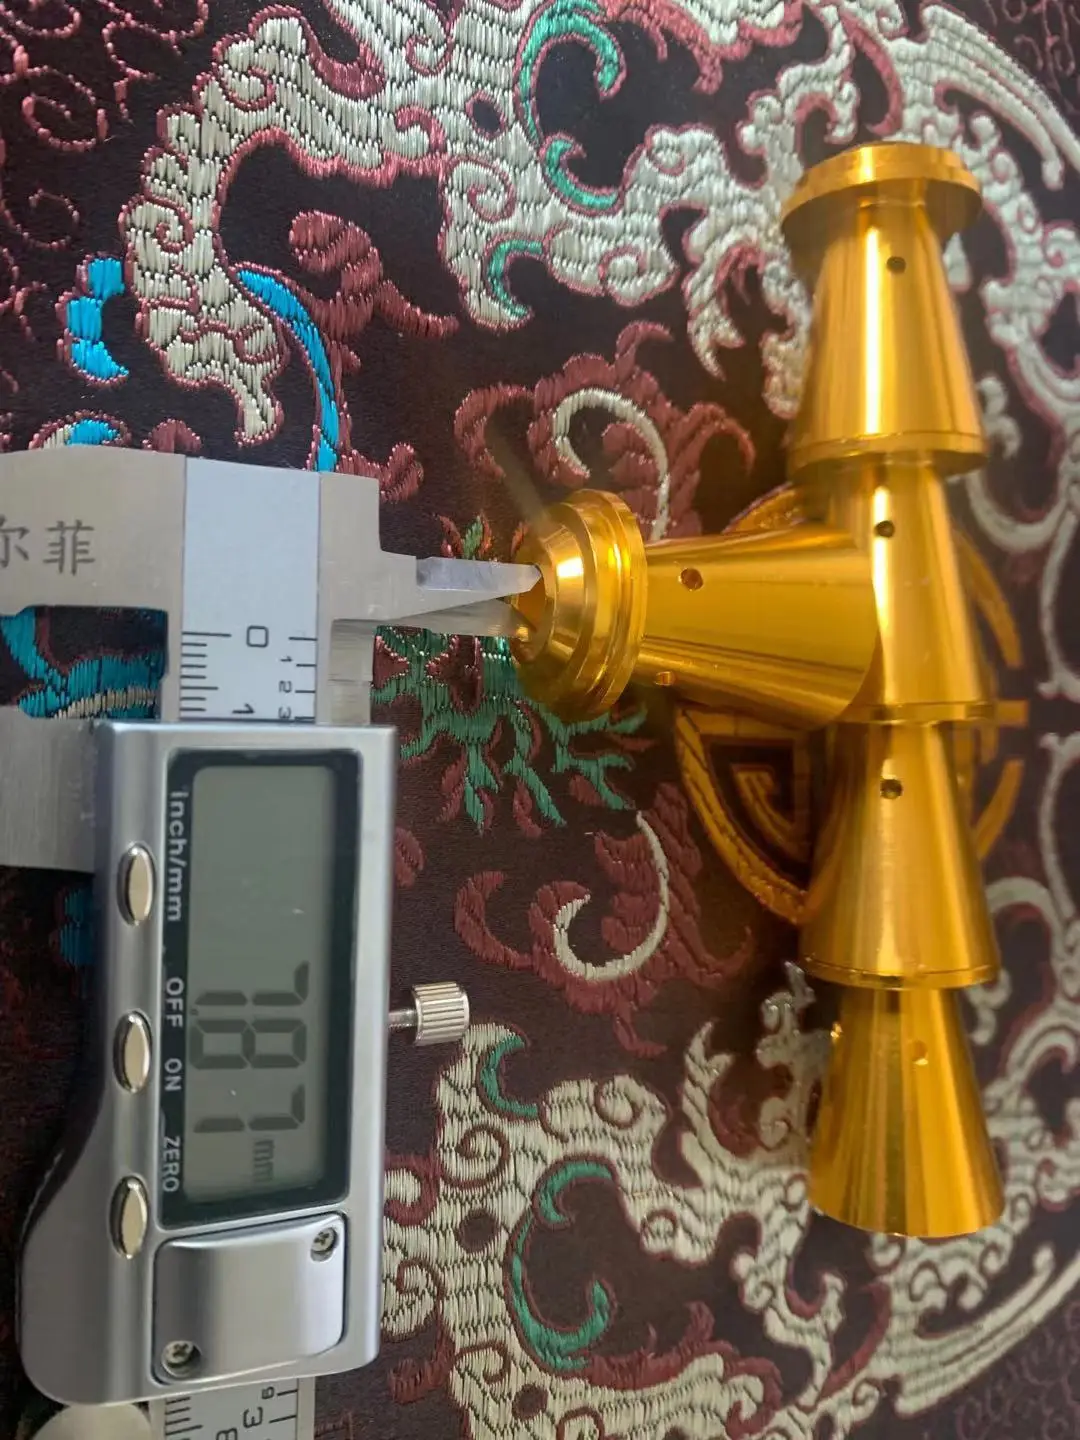 Топливный фильтр Shan bao pcp 24 см, чаша, фильтр, подходящая труба 28 мм от AliExpress RU&CIS NEW